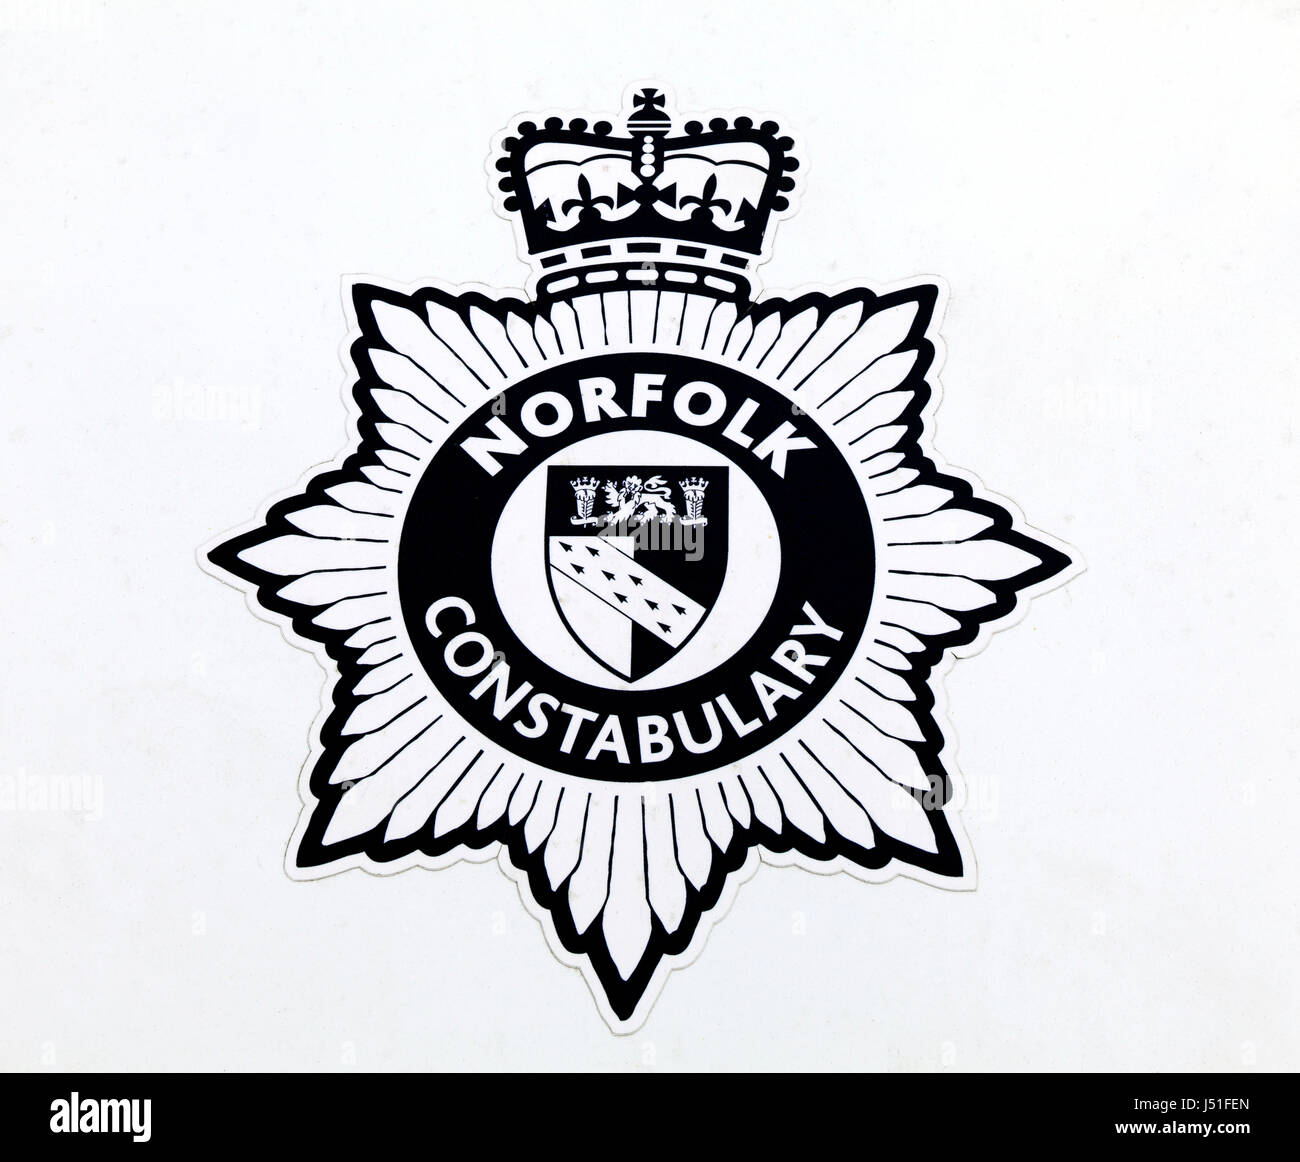 Norfolk Constabulary, logo, auto della polizia insegne, badge contea inglese forza di polizia, England, Regno unito le forze di polizia Foto Stock